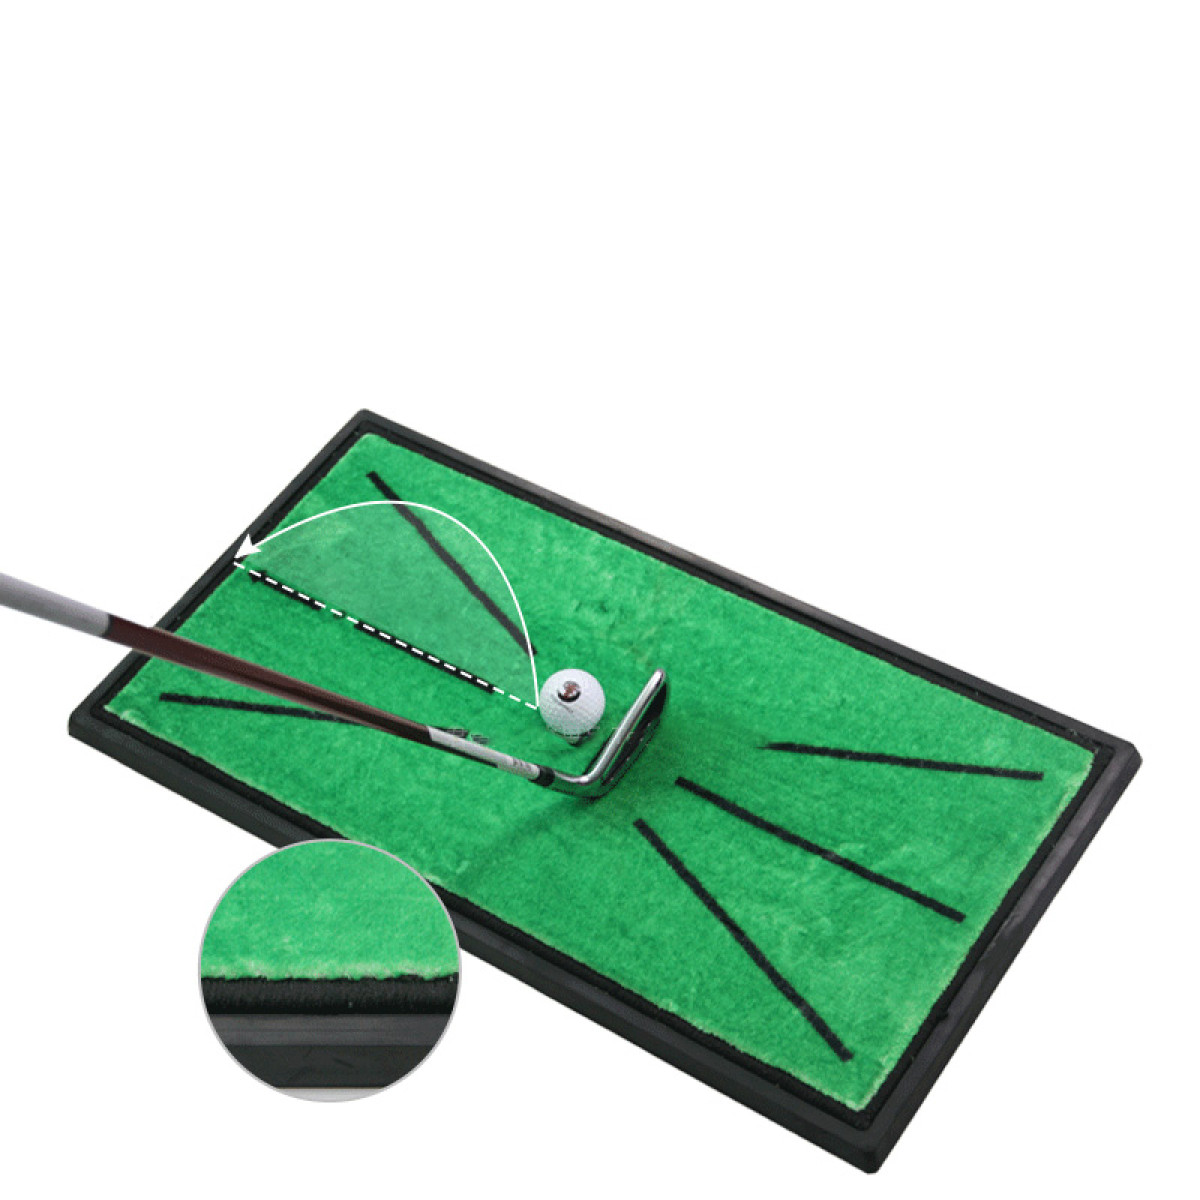 INF 295657 Golf-Trainingsmatte, grün